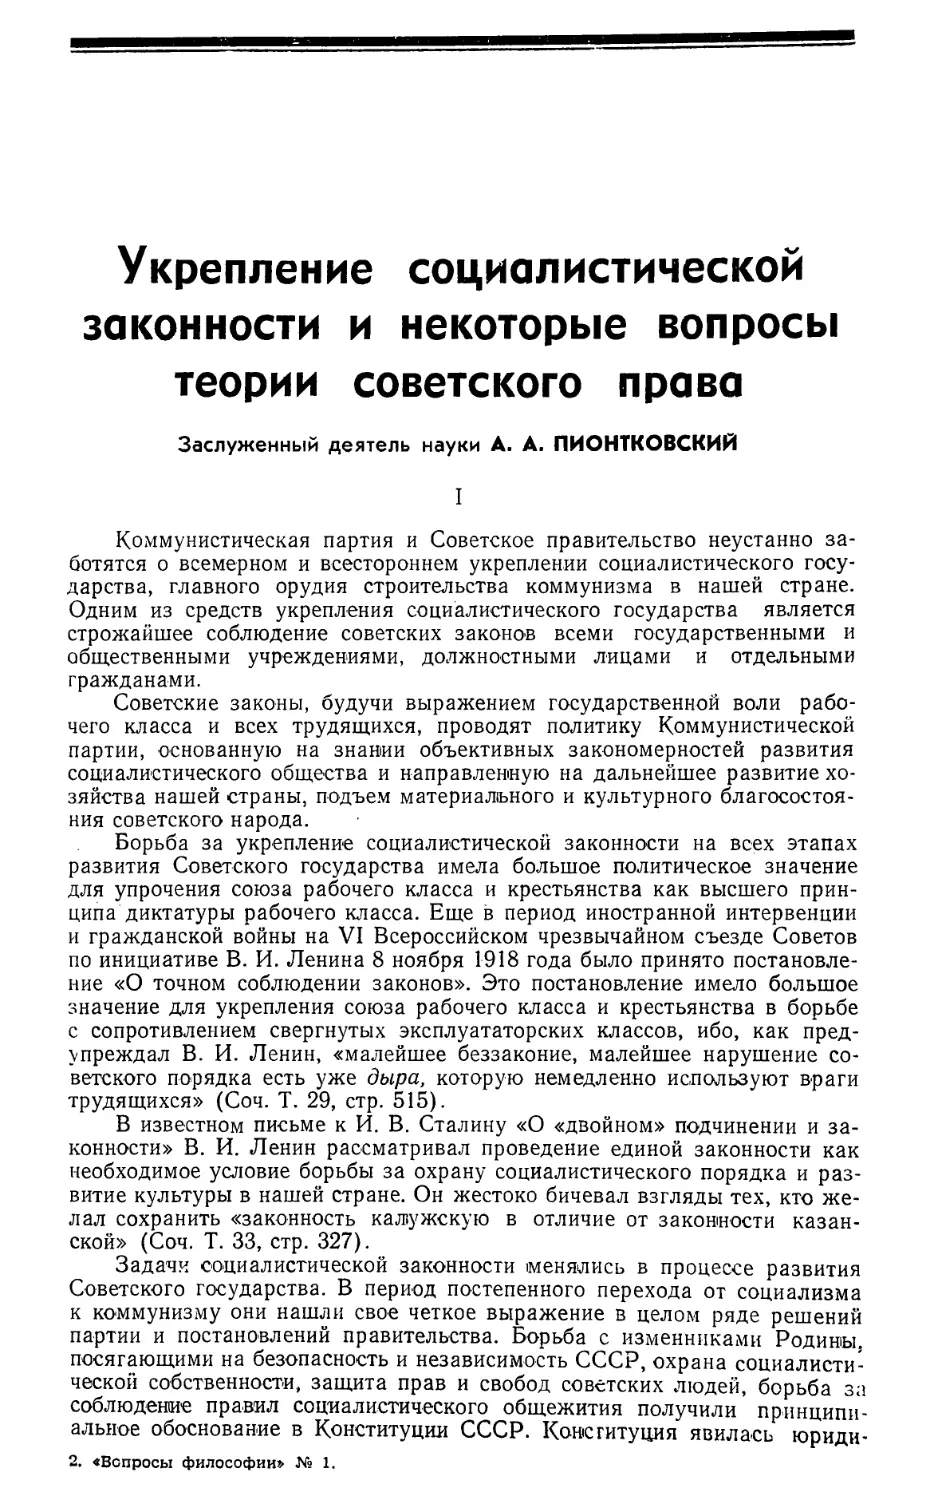 А. А. Пионтковский — Укрепление социалистической законности и некоторые вопросы теории советского права